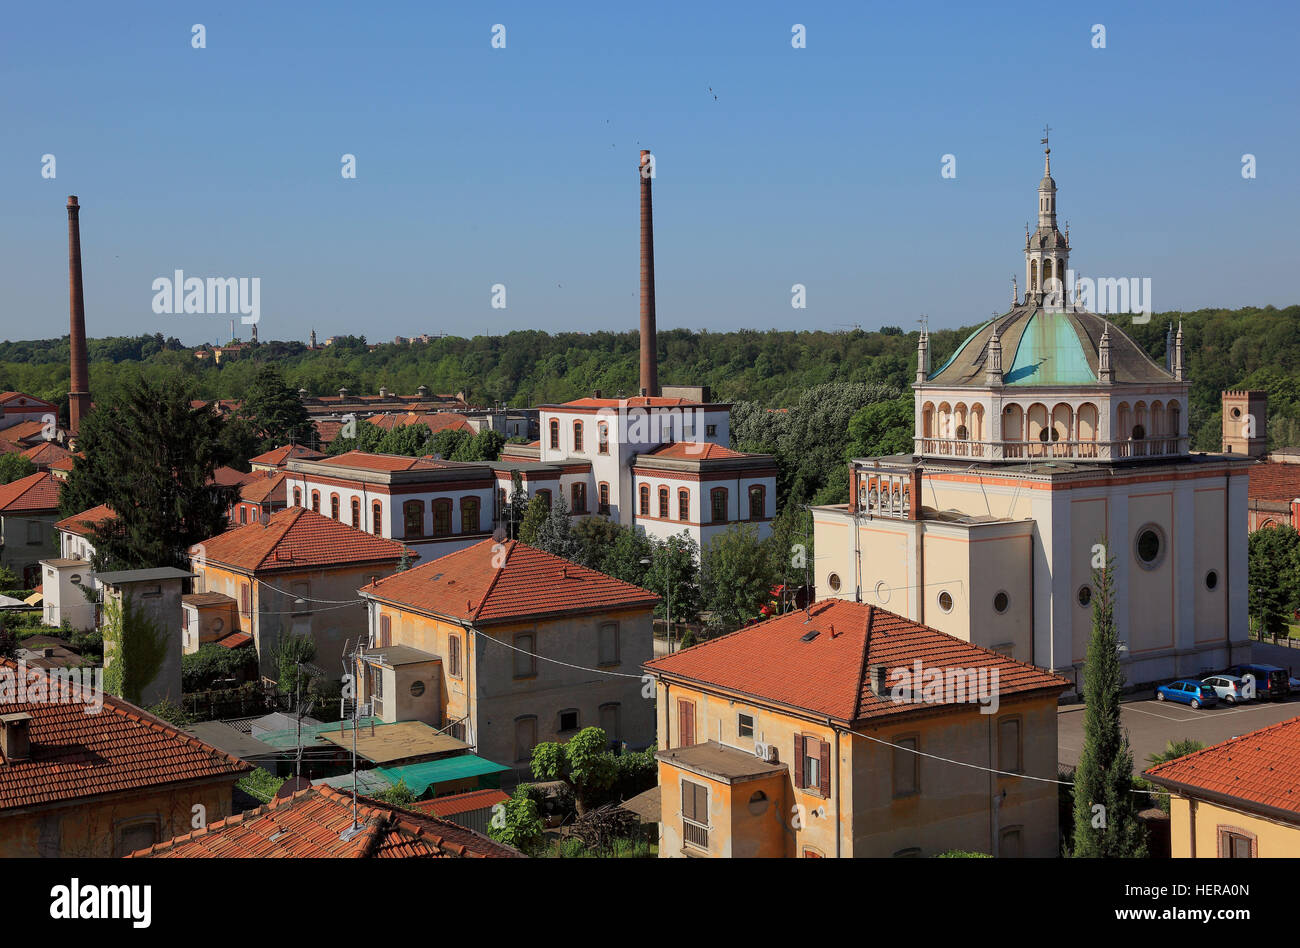 Italien, Blick auf das Arbeiterdorf Crespi d Adda, Kirche und einen Teil der ehemaligen Textilfabrik, Industriedenkmal, UNESCO Weltkulturerbe Stock Photo